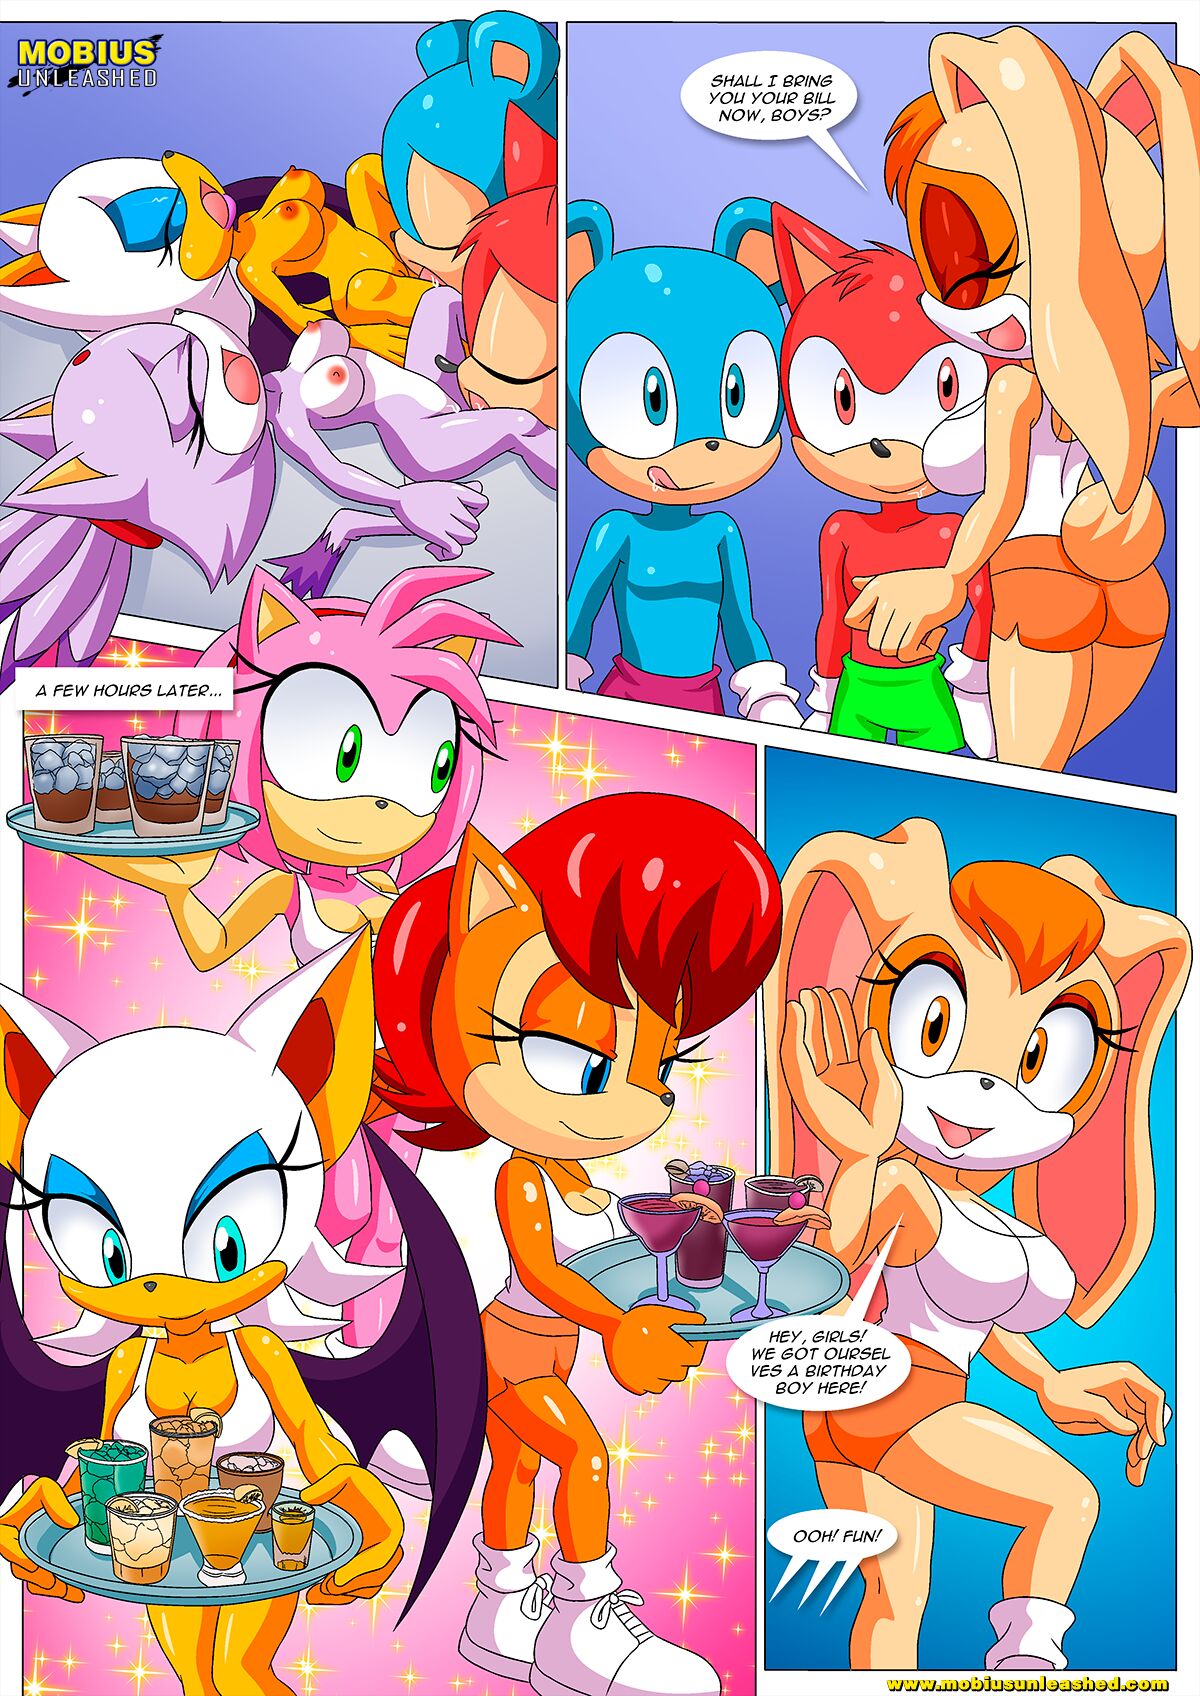 Cartoon Hooters Porn - Mobian Hooters [Palcomix] (Sonic The Hedgehog) â€¢ Free Porn Comics